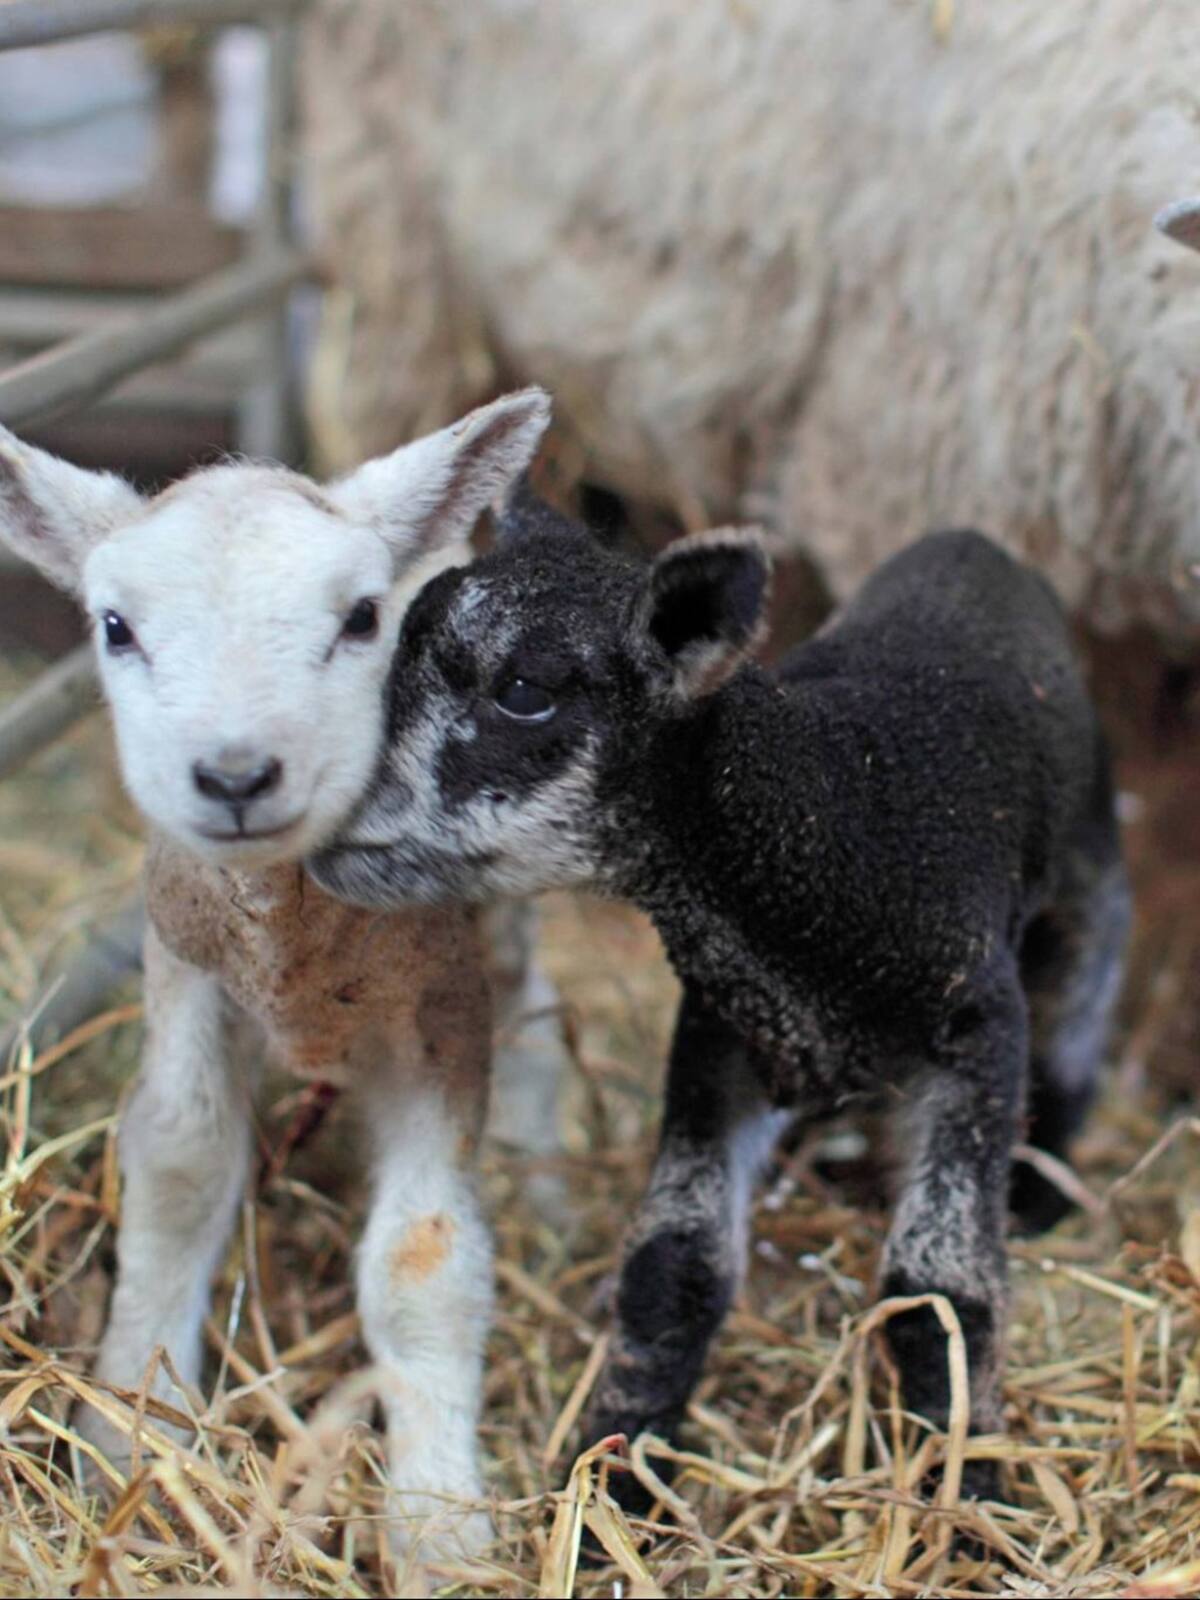 Experience Lambing at Lovaton Farm